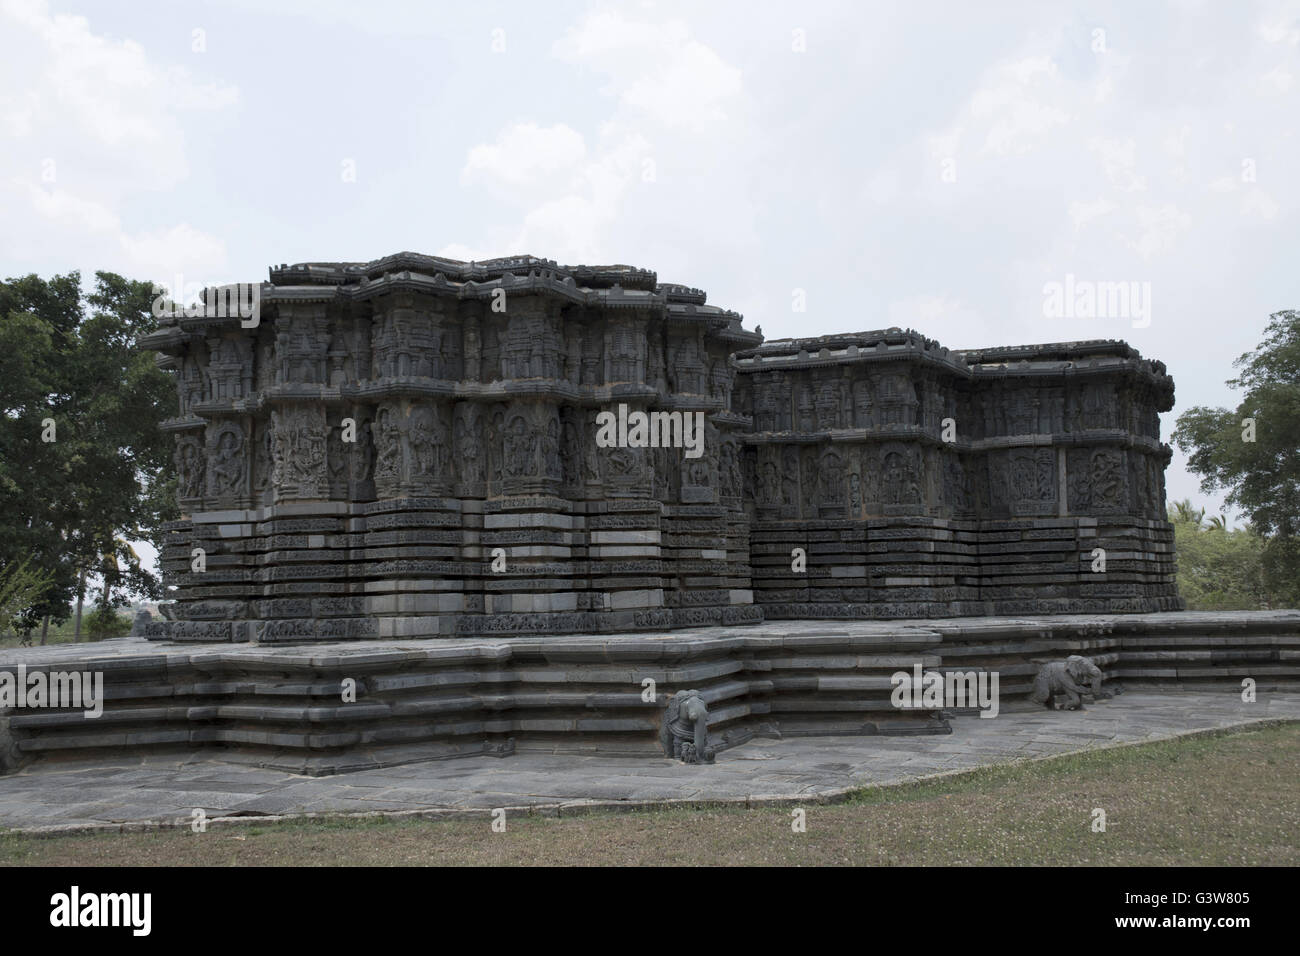 Temple, kedareshwara halebid, Karnataka, Inde. vue depuis le sud-ouest. Banque D'Images